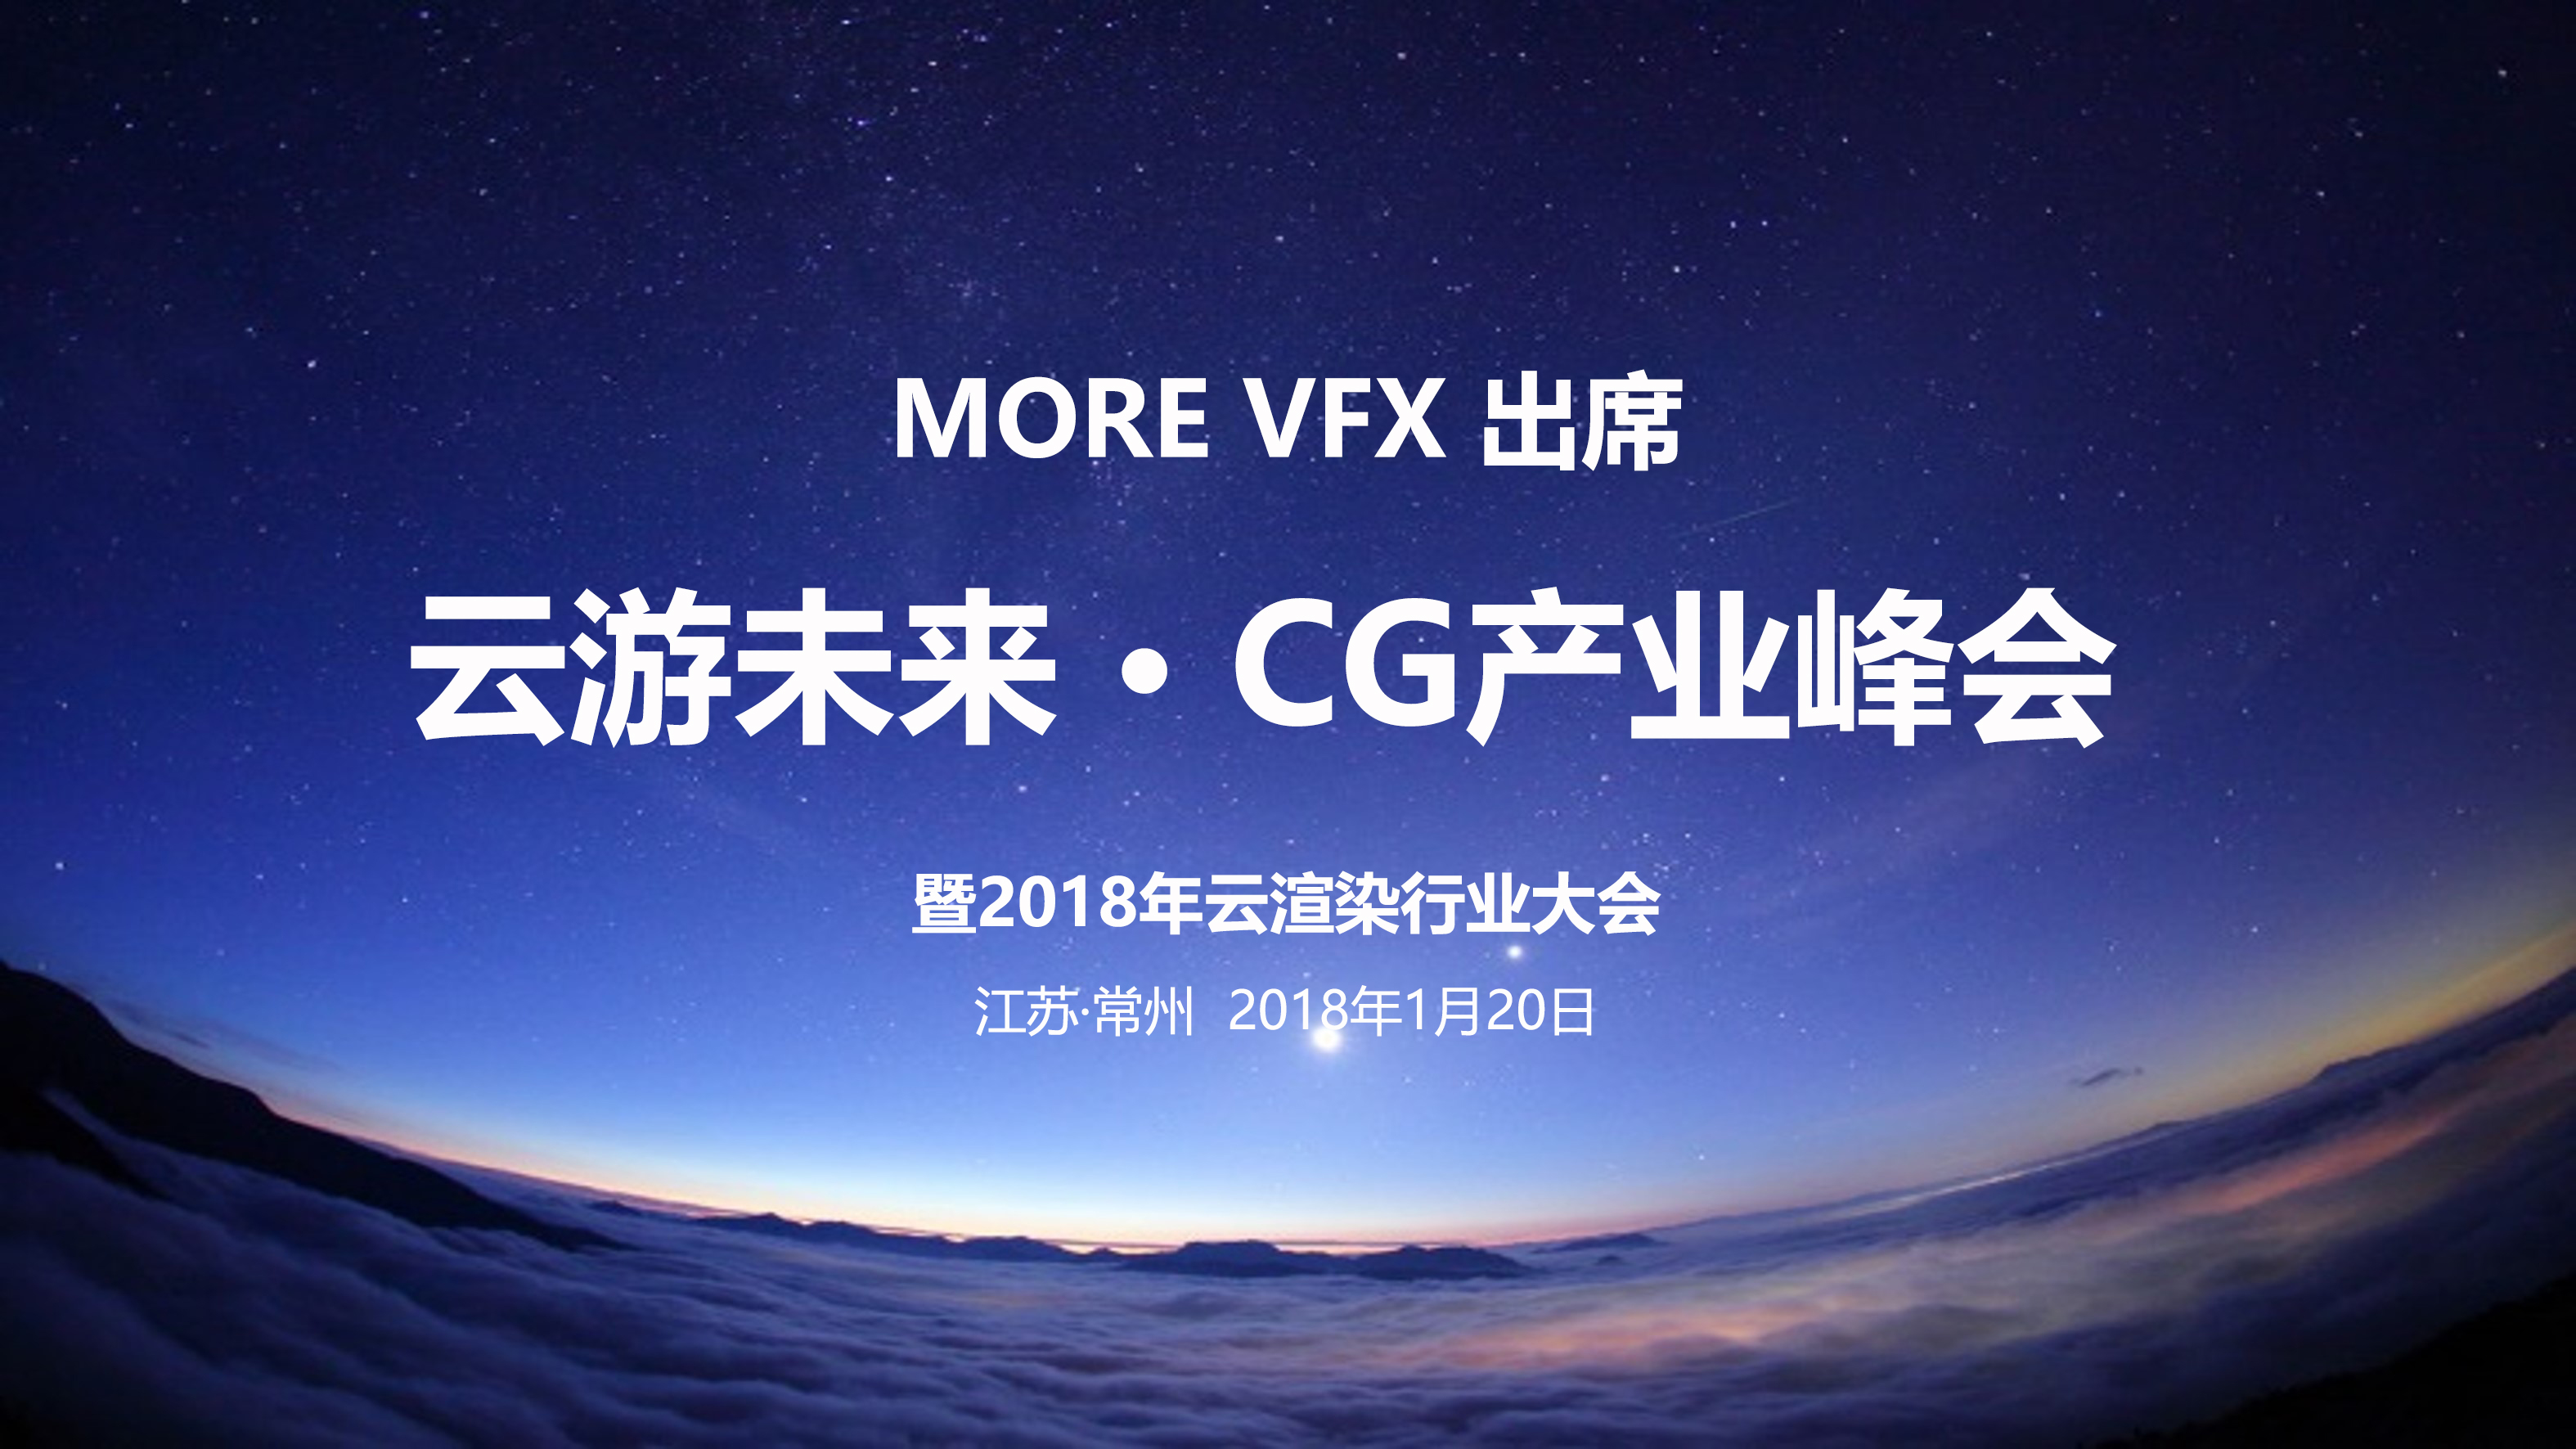 MOREVFX出席CG产业峰会